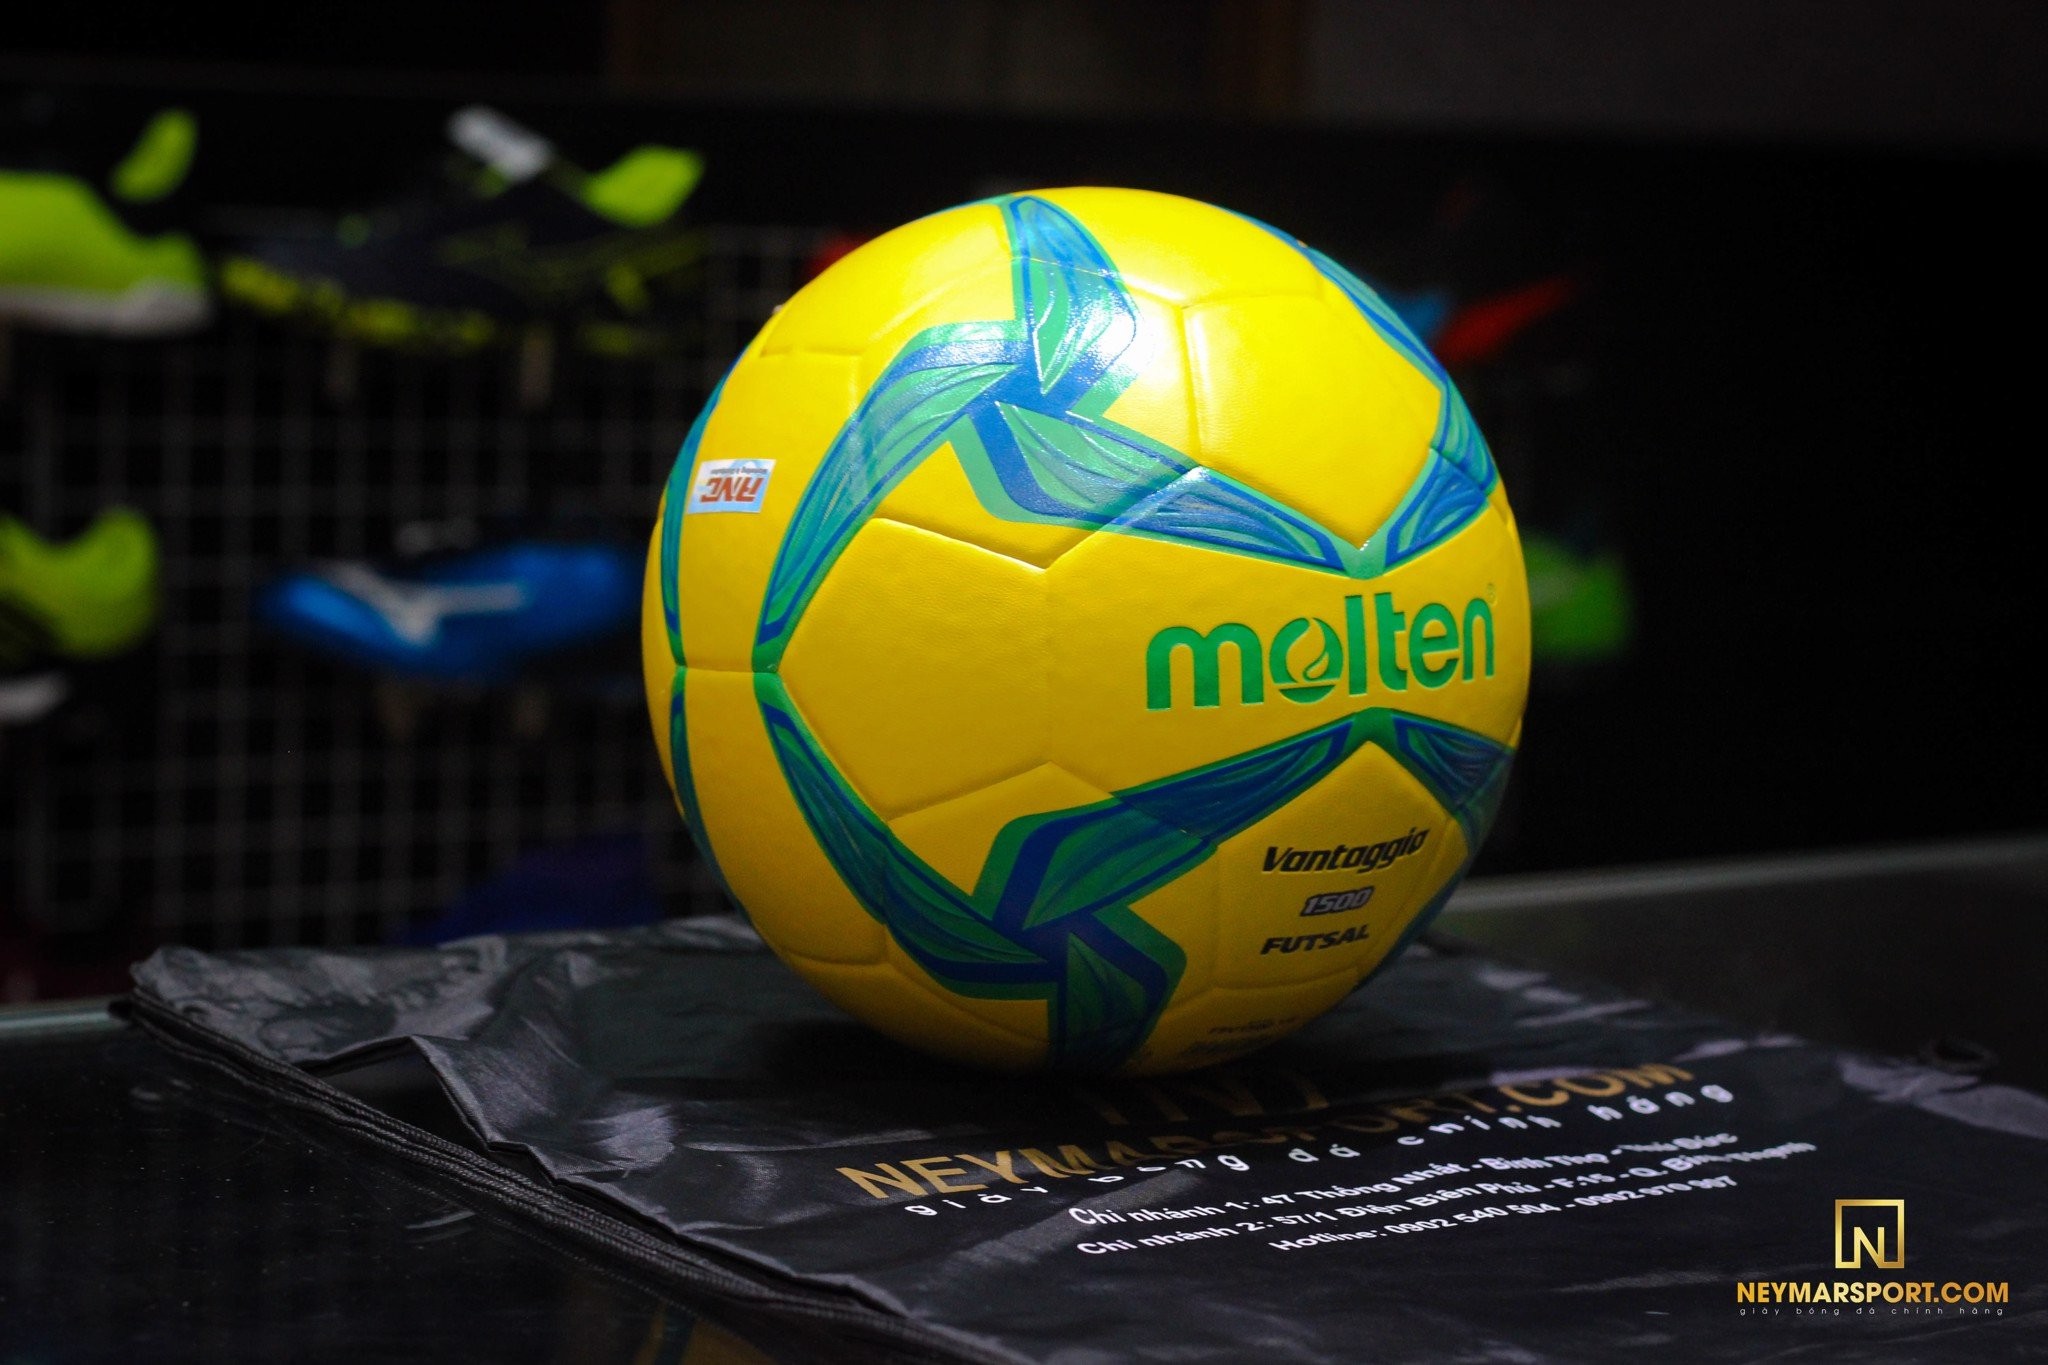 Bóng đá Futsal Molten 